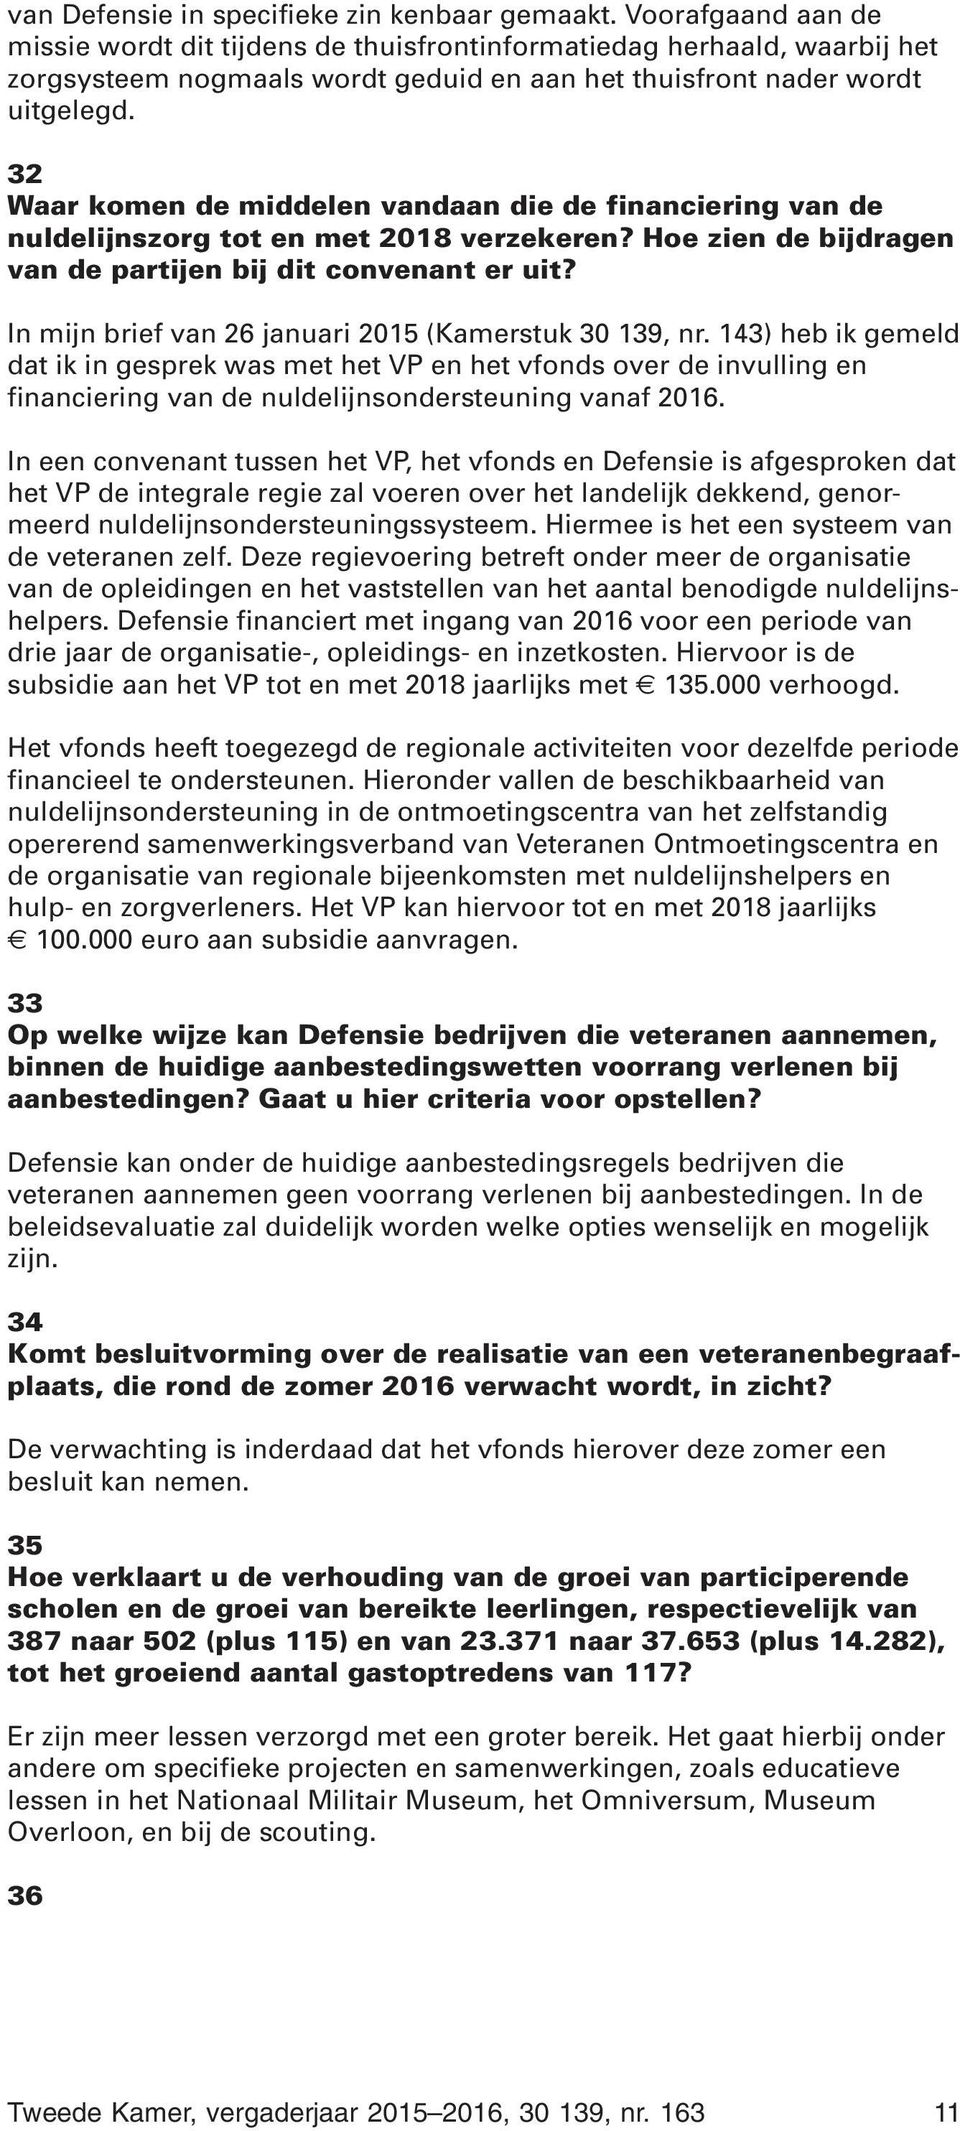 32 Waar komen de middelen vandaan die de financiering van de nuldelijnszorg tot en met 2018 verzekeren? Hoe zien de bijdragen van de partijen bij dit convenant er uit?